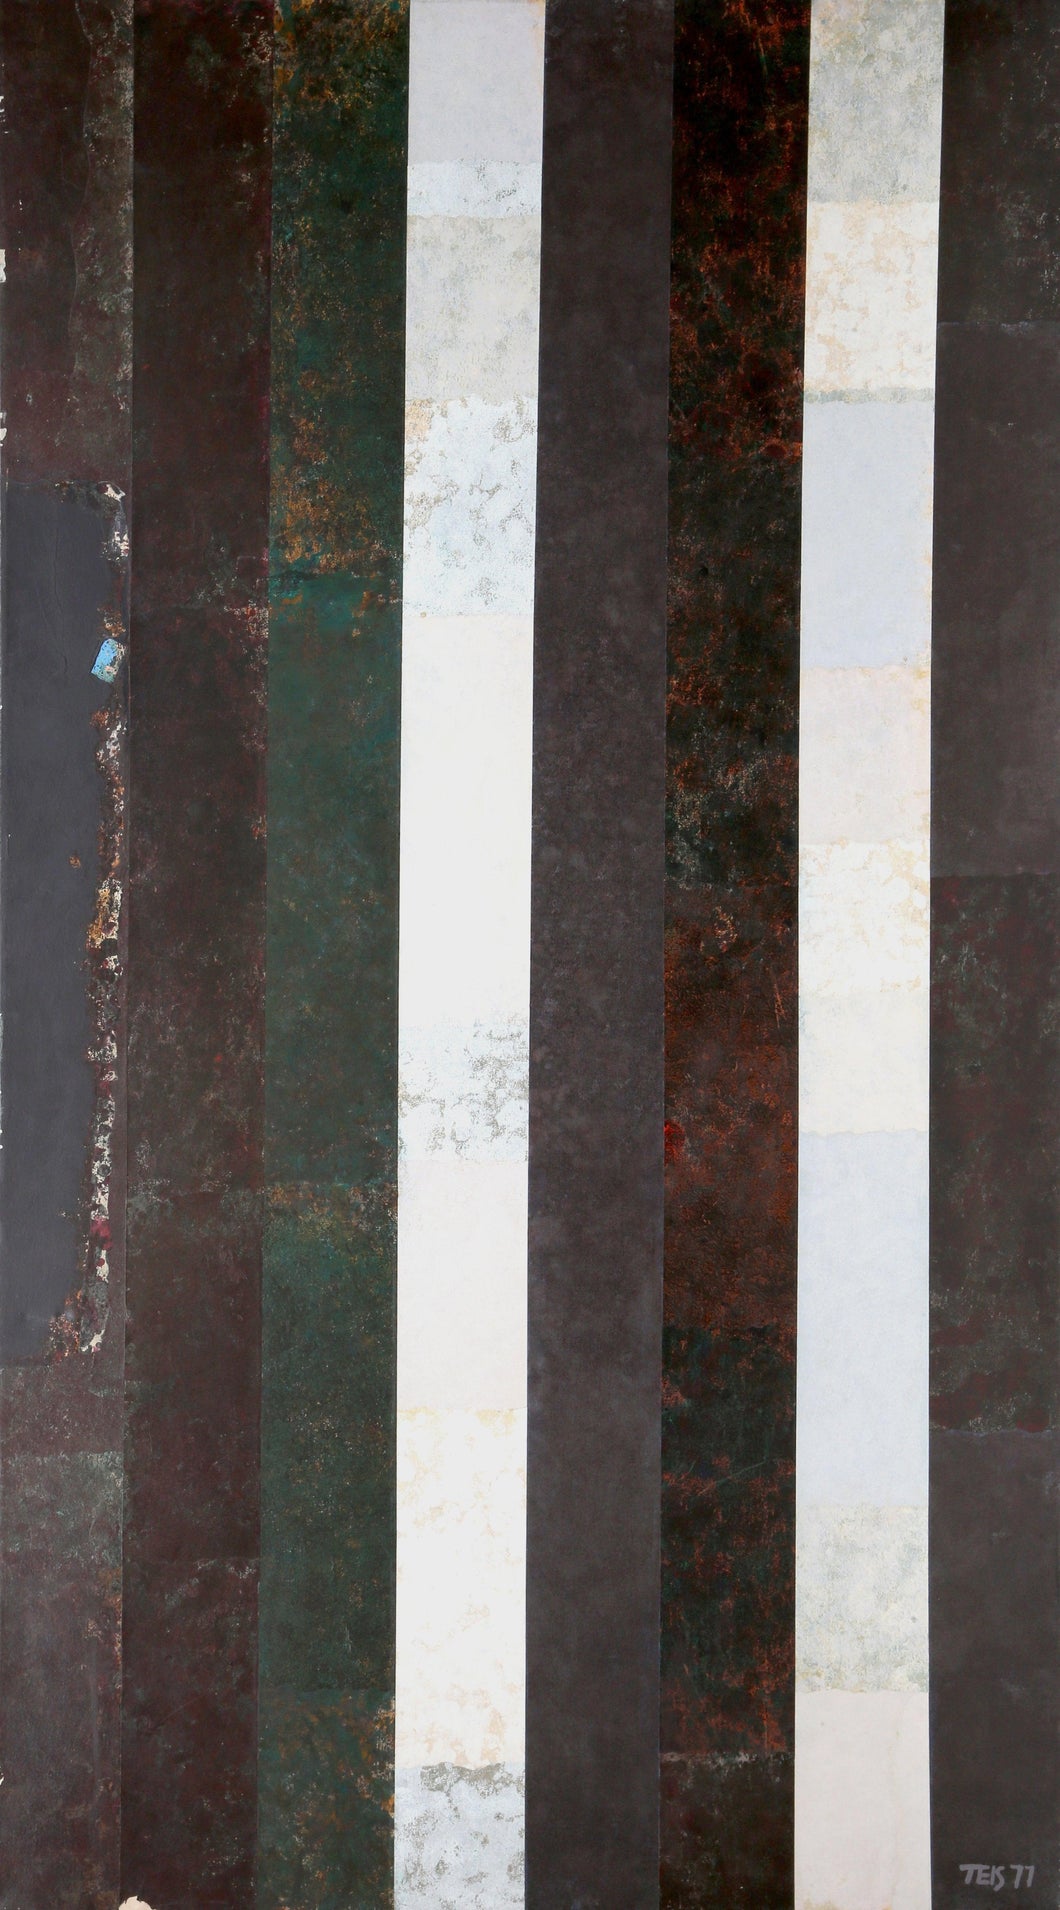 Metallic Black and White Stripes Acrylic | Dan Teis,{{product.type}}